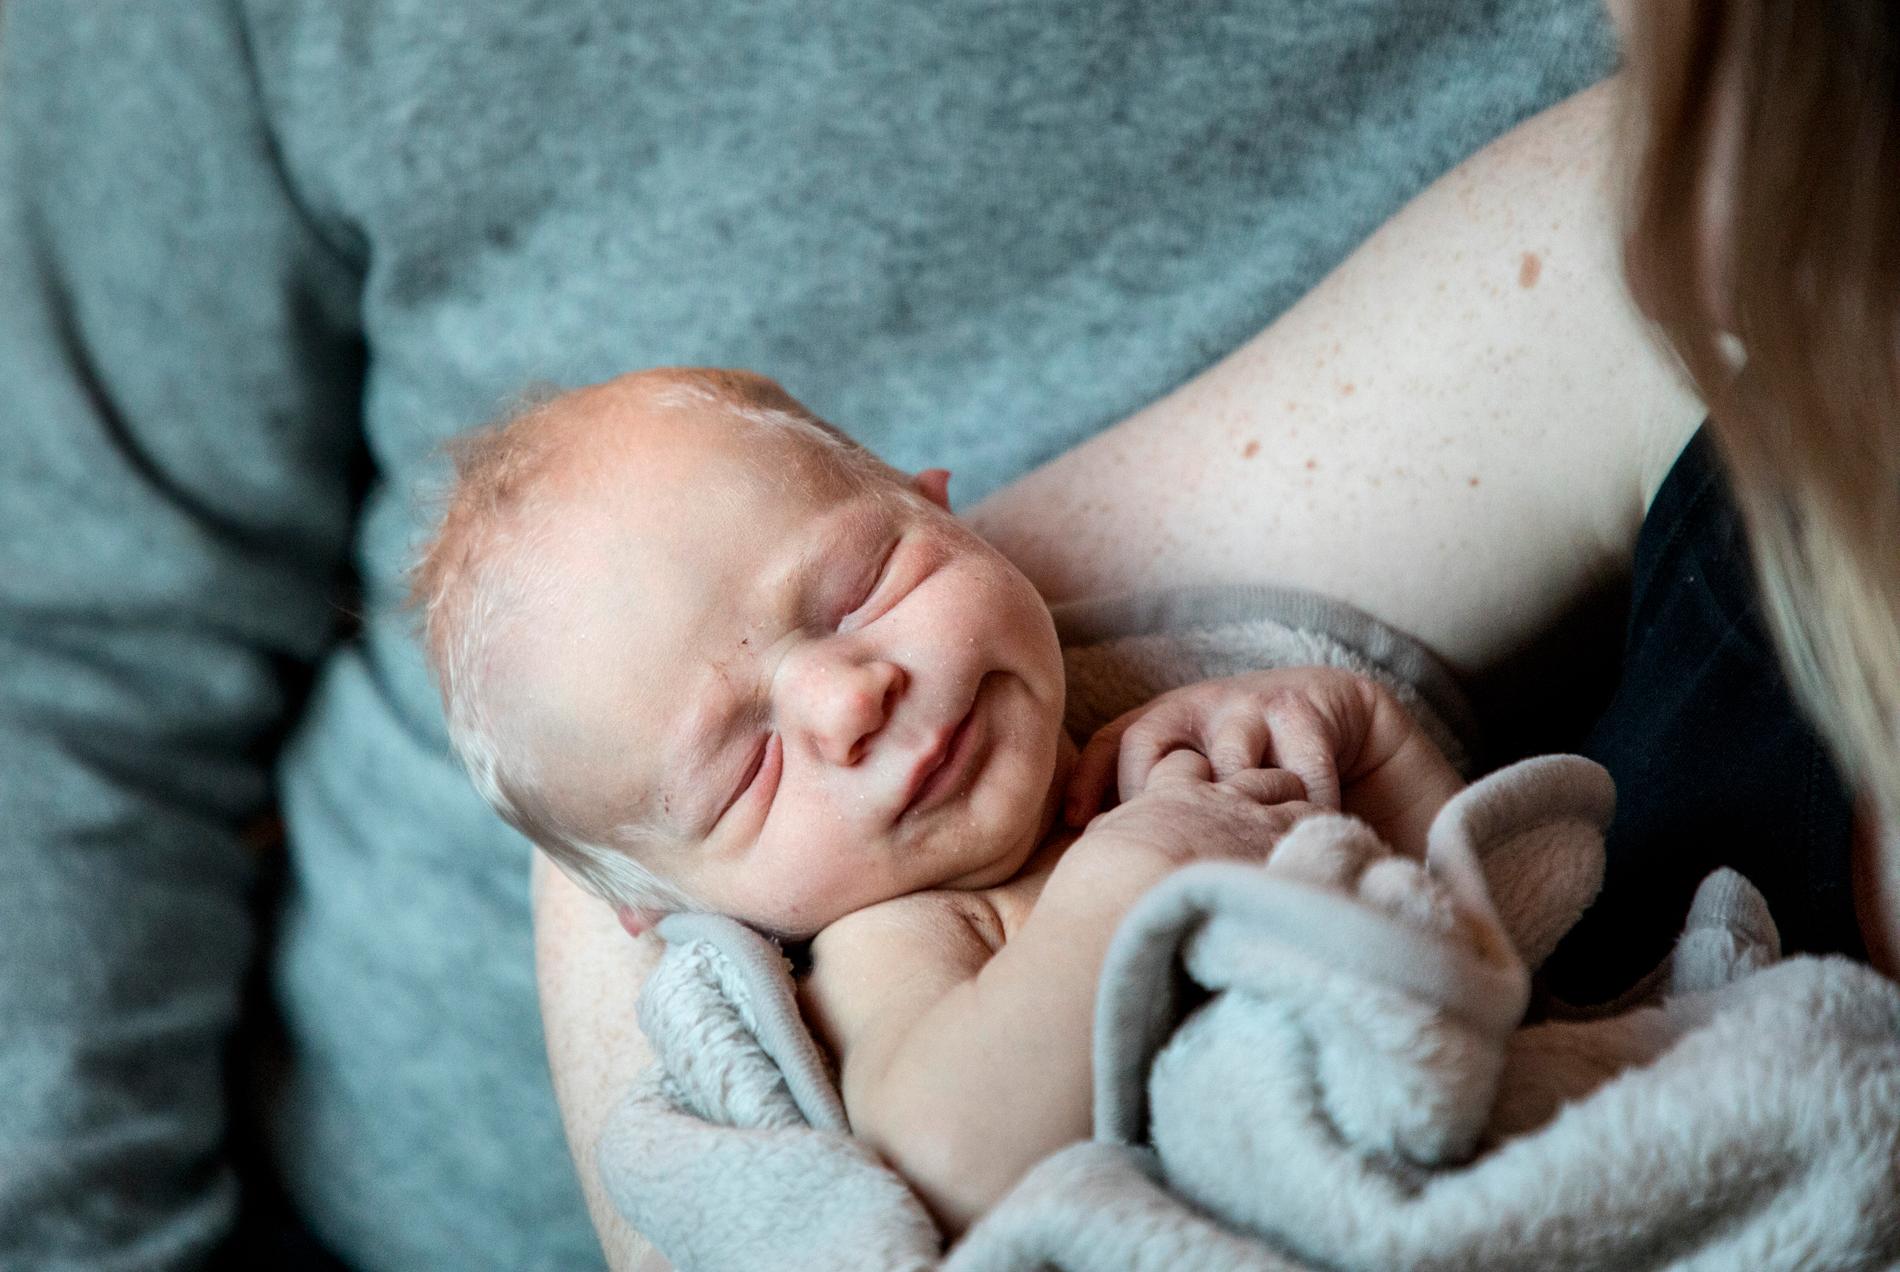 Från och med april kan ett barn i Finland få två mammor direkt från födseln, till skillnad mot i dag då det bara kan ske genom adoption inom familjen. Arkivbild.